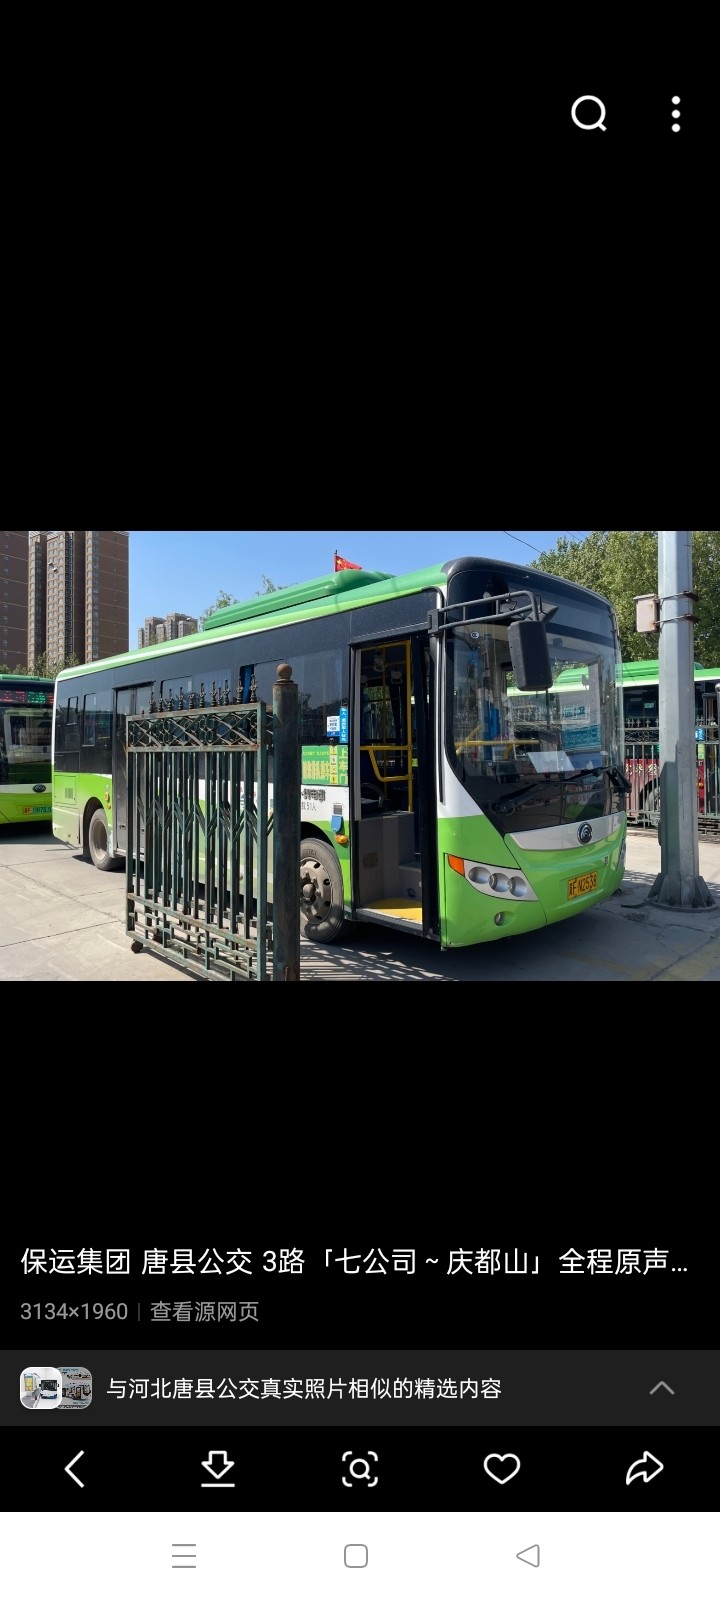 唐县的公交车是这个吧？